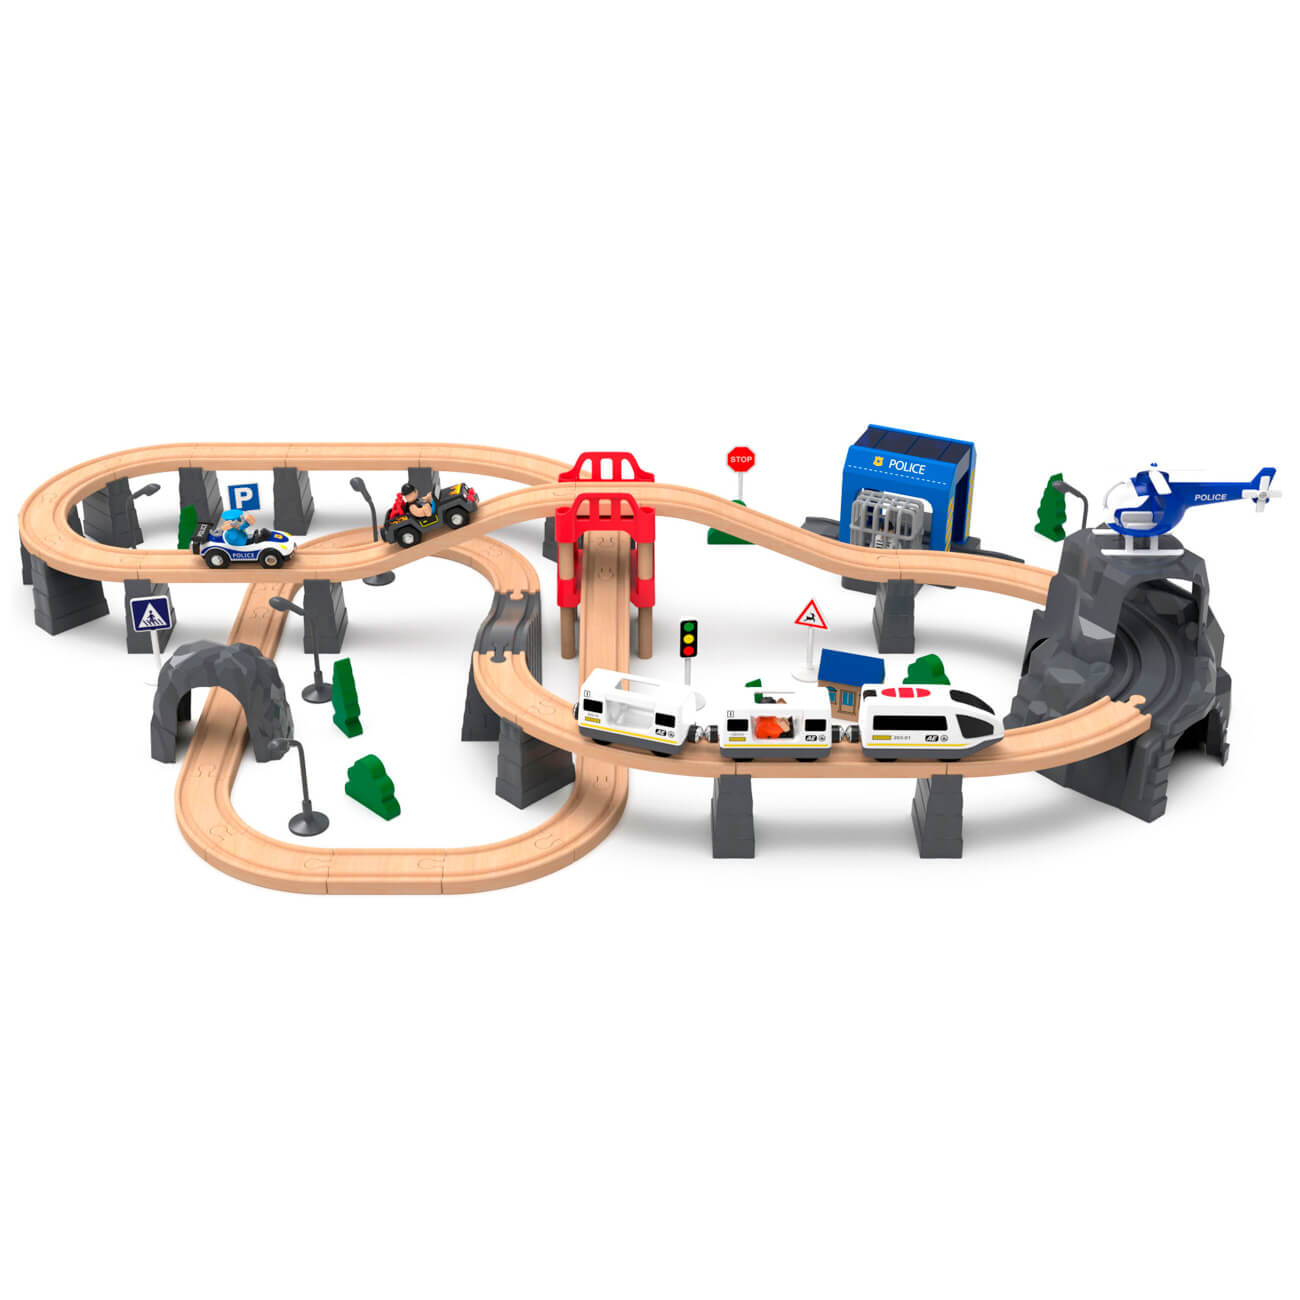 Железная дорога игрушечная, 98 см, дерево/пластик, Электропоезд, Game rail железная дорога сказочное путешествие в пакете